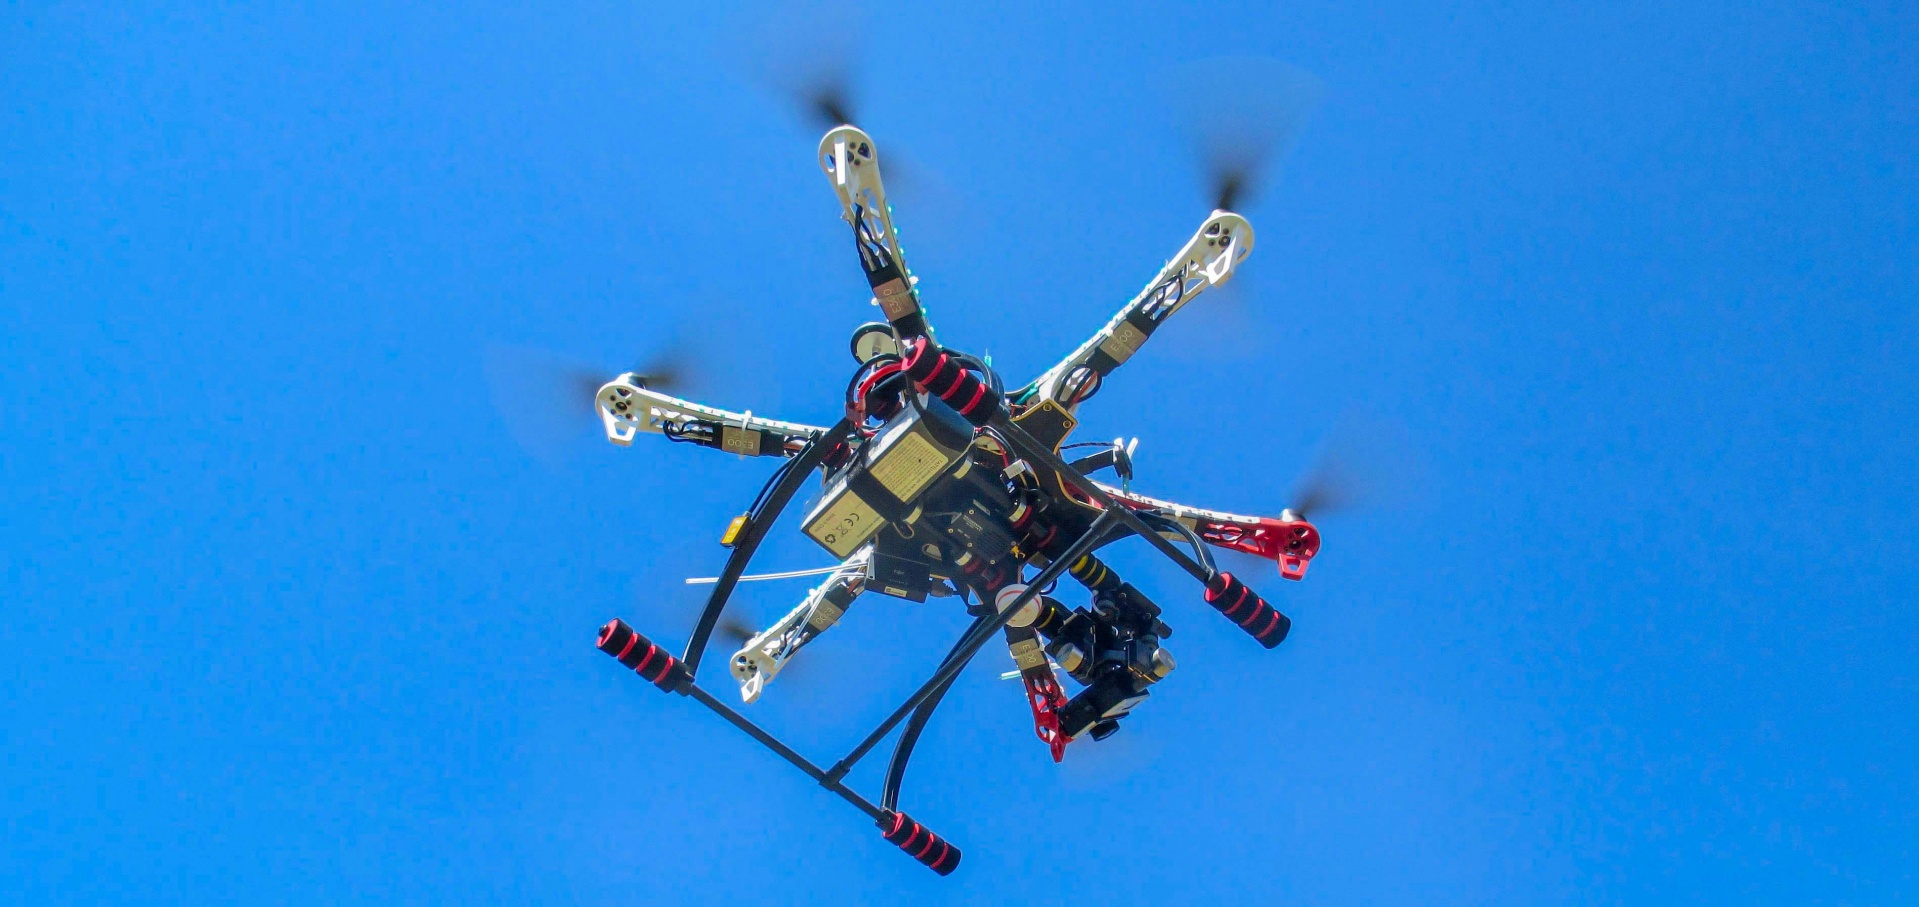 drone uav aerial vehicle free photo